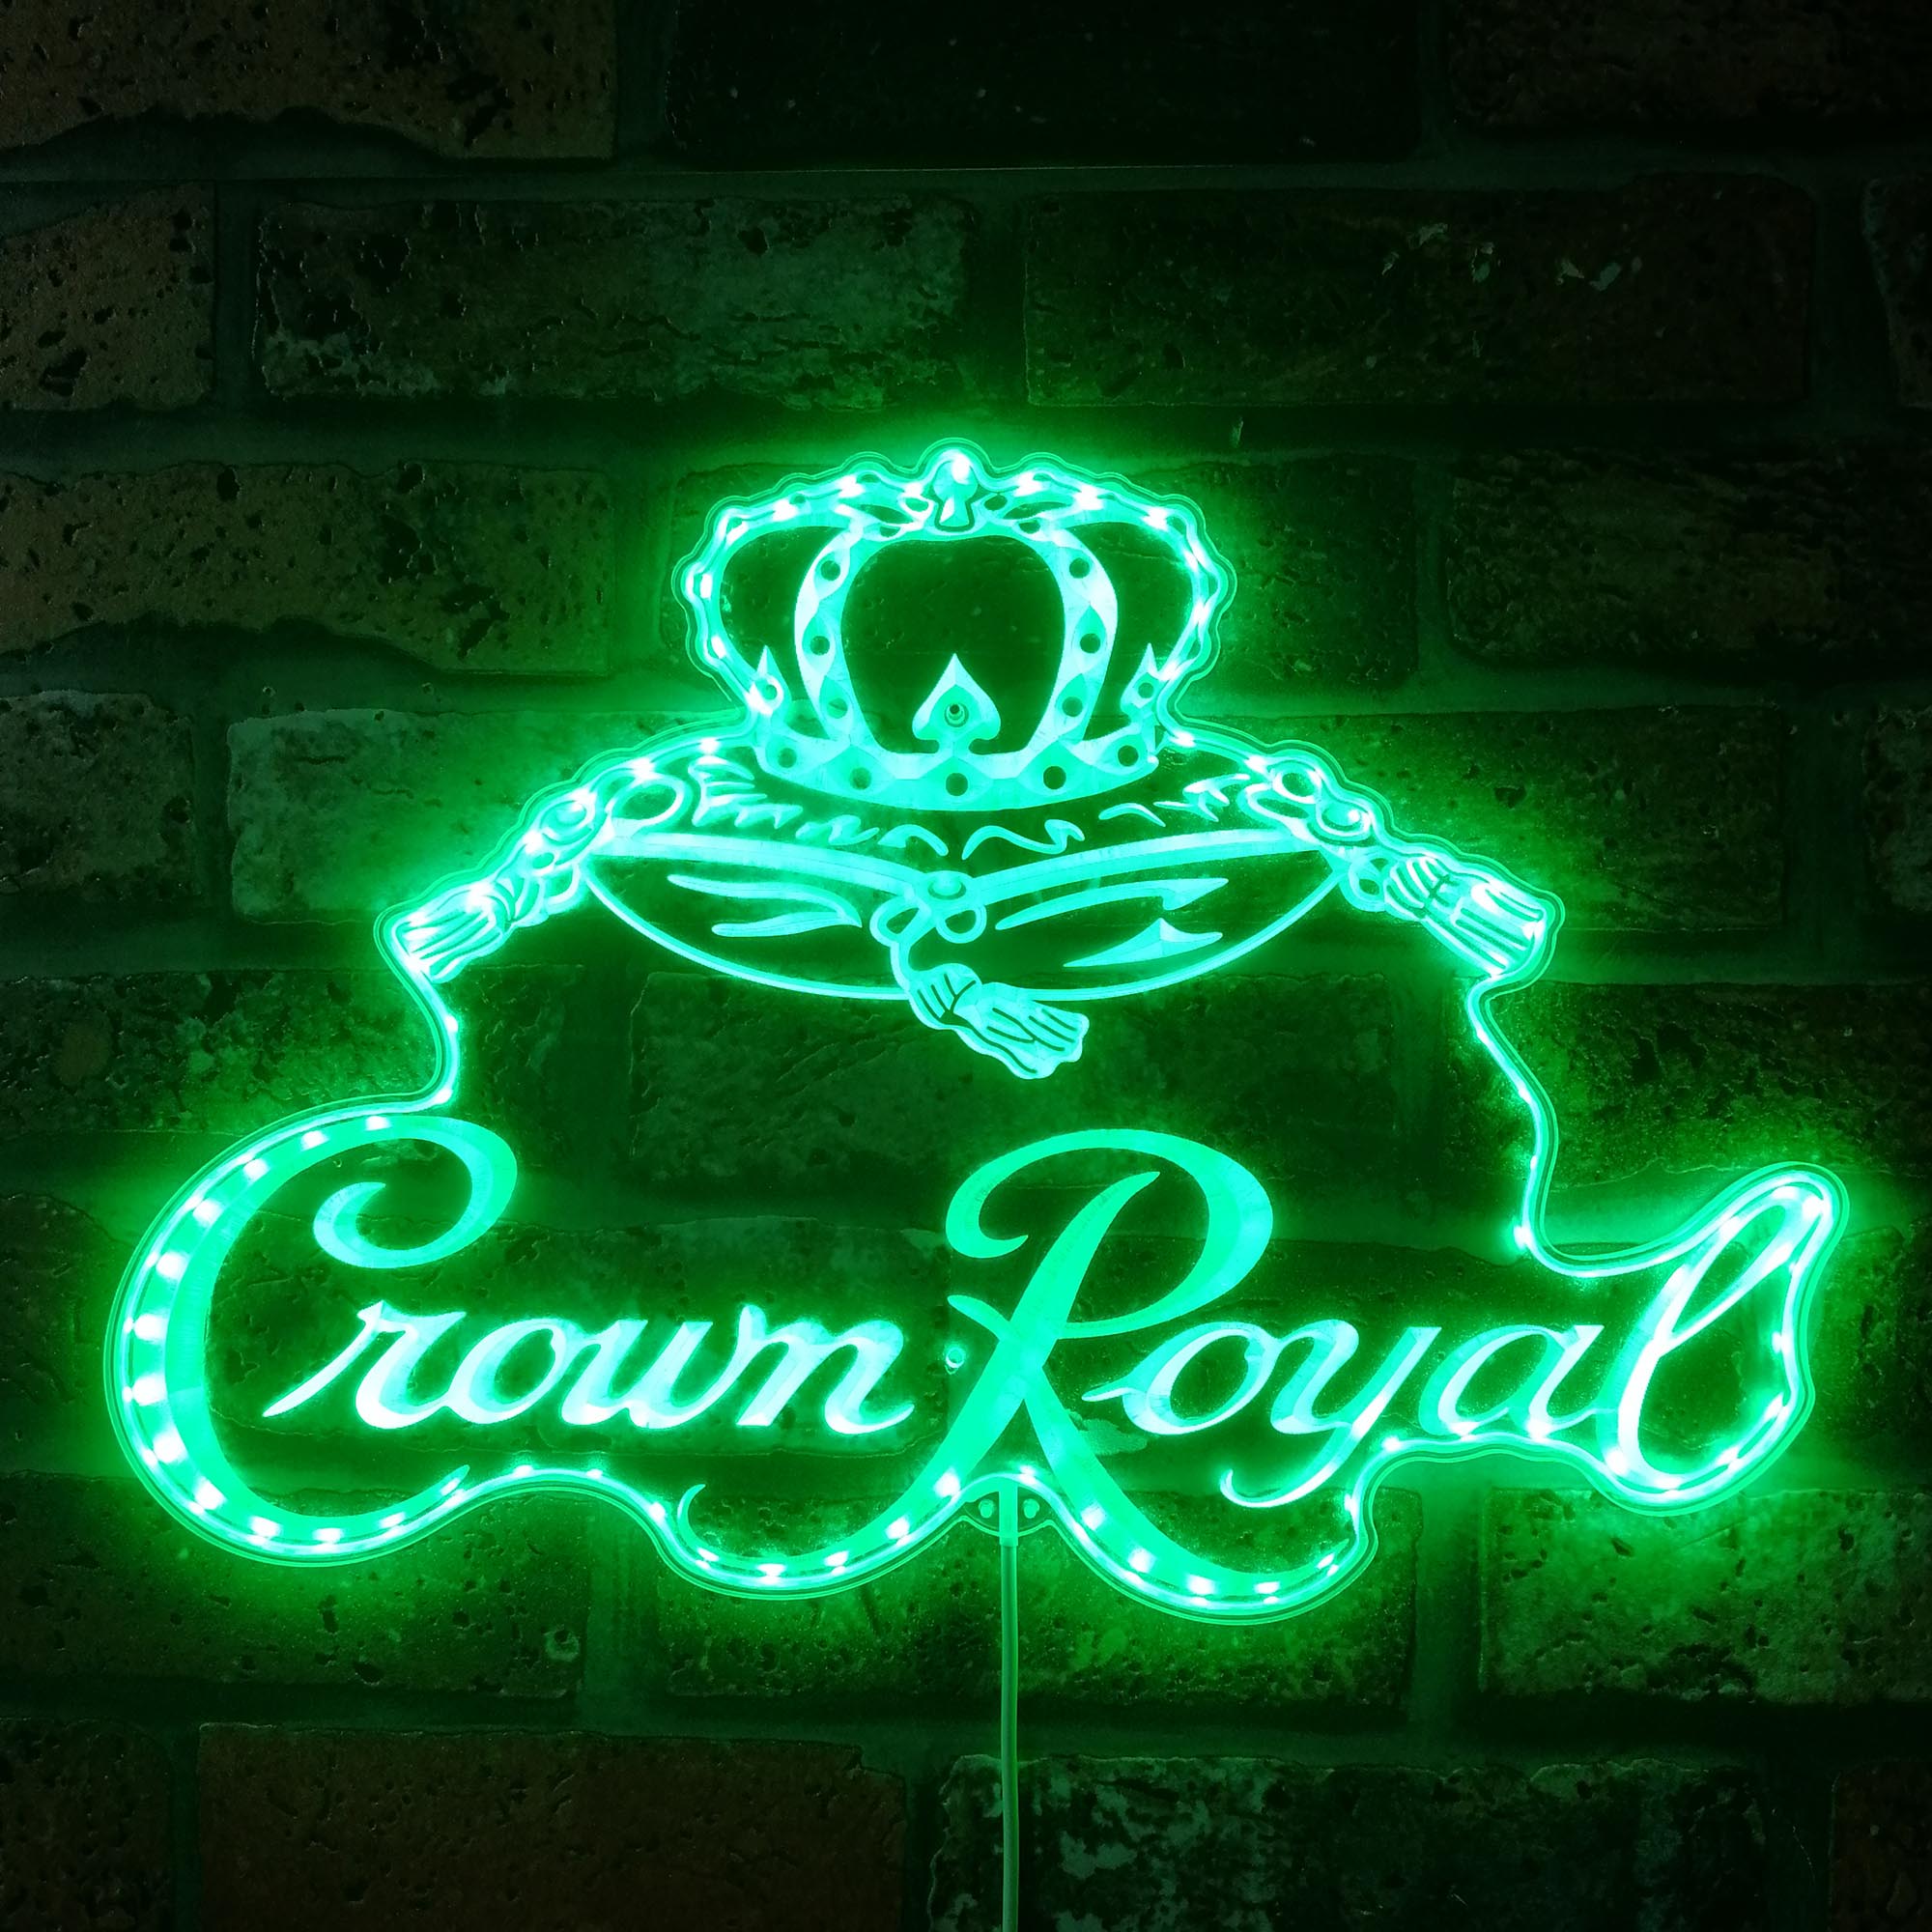 Crown Royal Dynamic RGB Edge Lit LED Sign